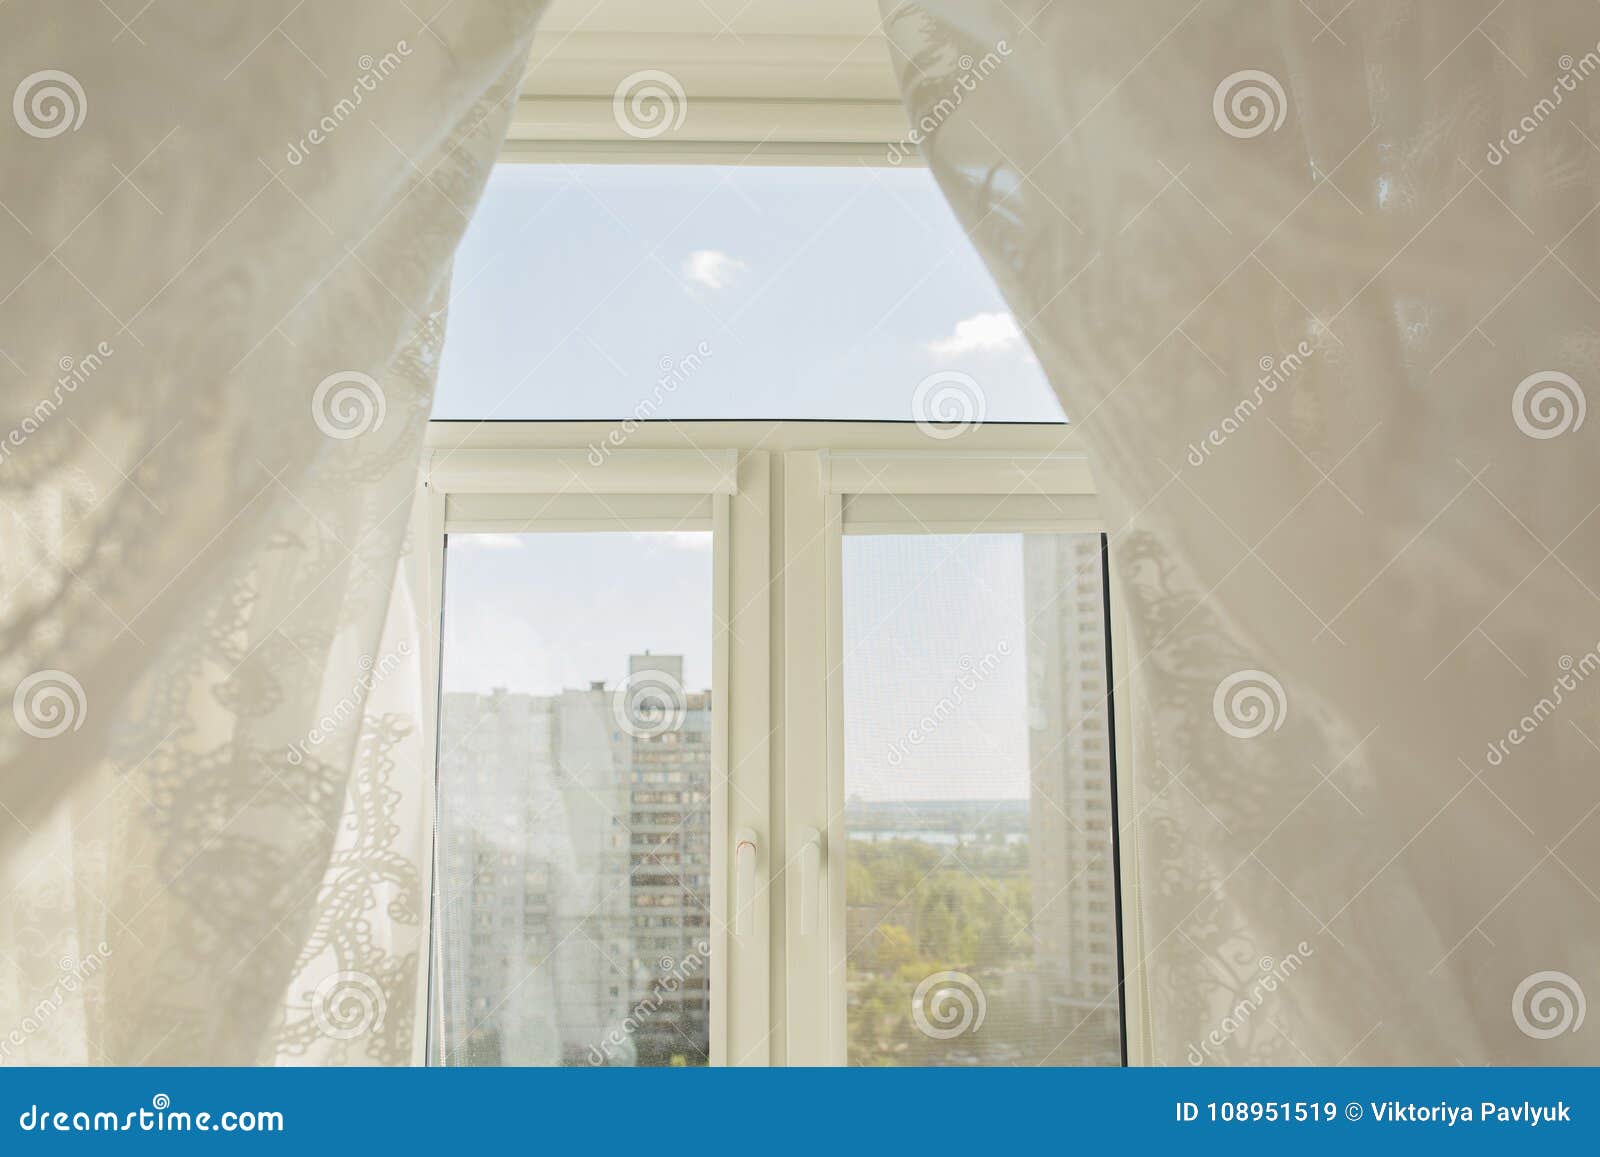 Fenster In Einem Wohnzimmer Durch Die Transparenten Tulle